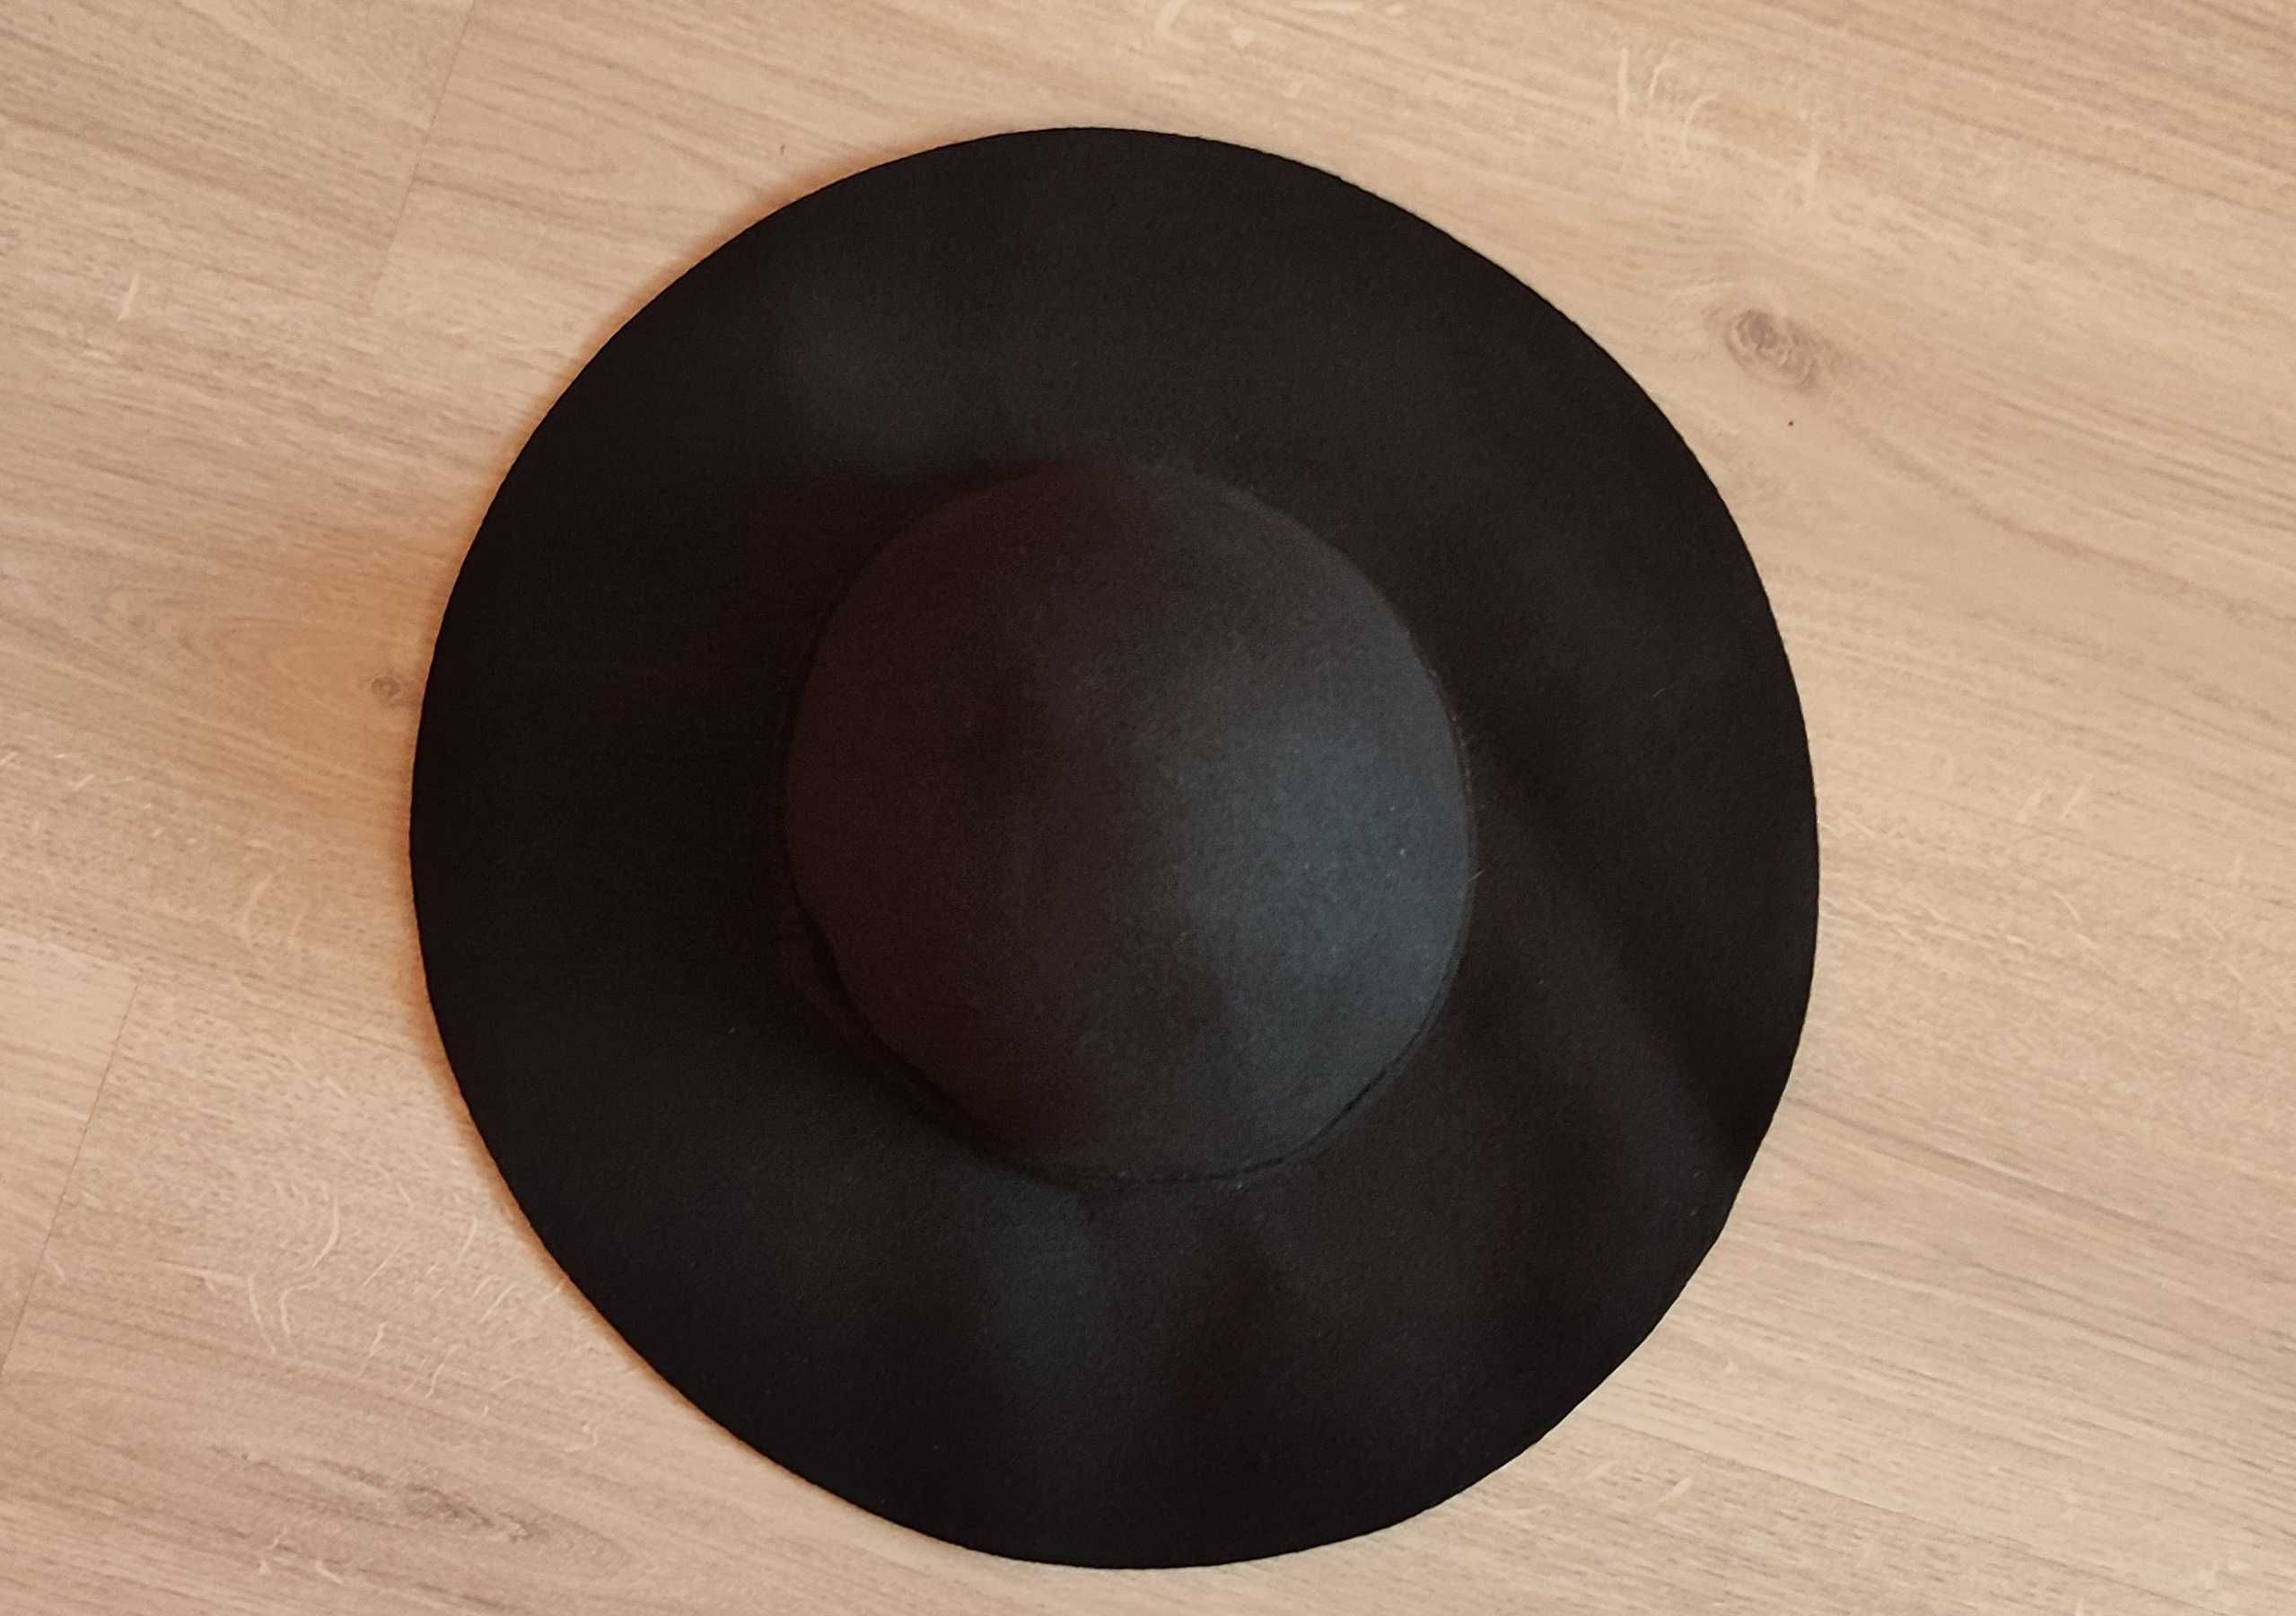 Стильний фетровий капелюх Bershka